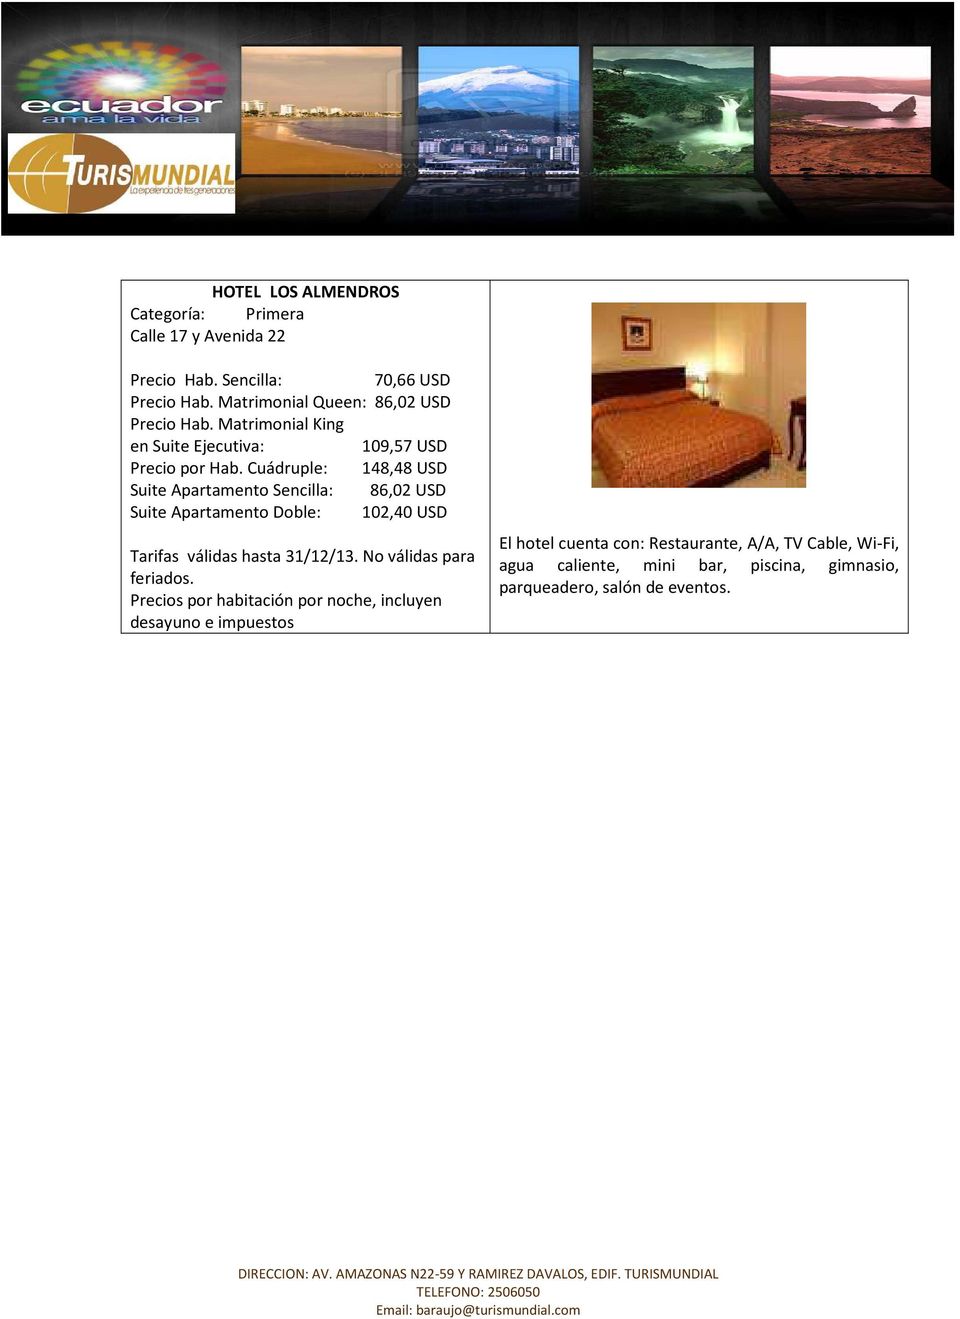 Cuádruple: 148,48 USD Suite Apartamento Sencilla: 86,02 USD Suite Apartamento Doble: 102,40 USD Tarifas válidas hasta 31/12/13.